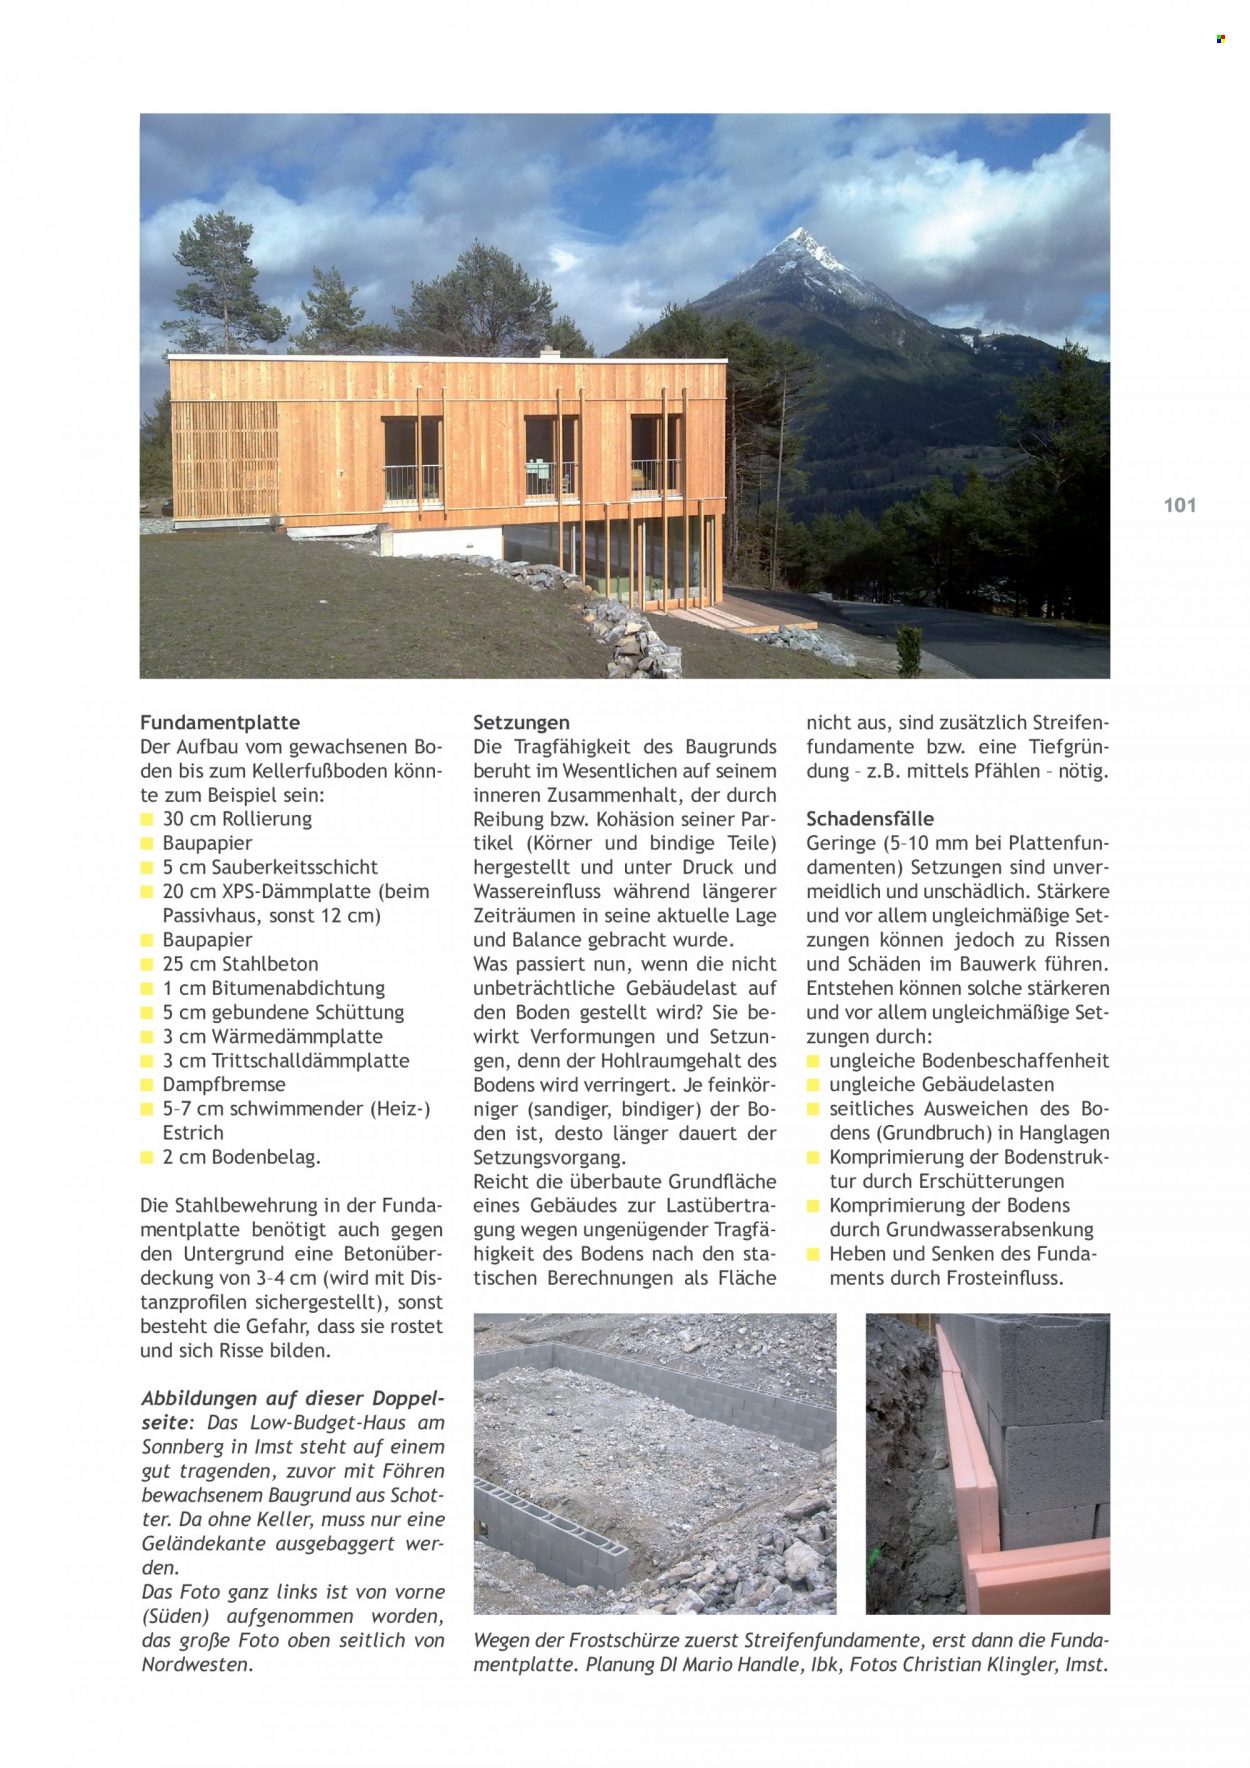 Angebote Salzburger Lagerhaus. Seite 103.